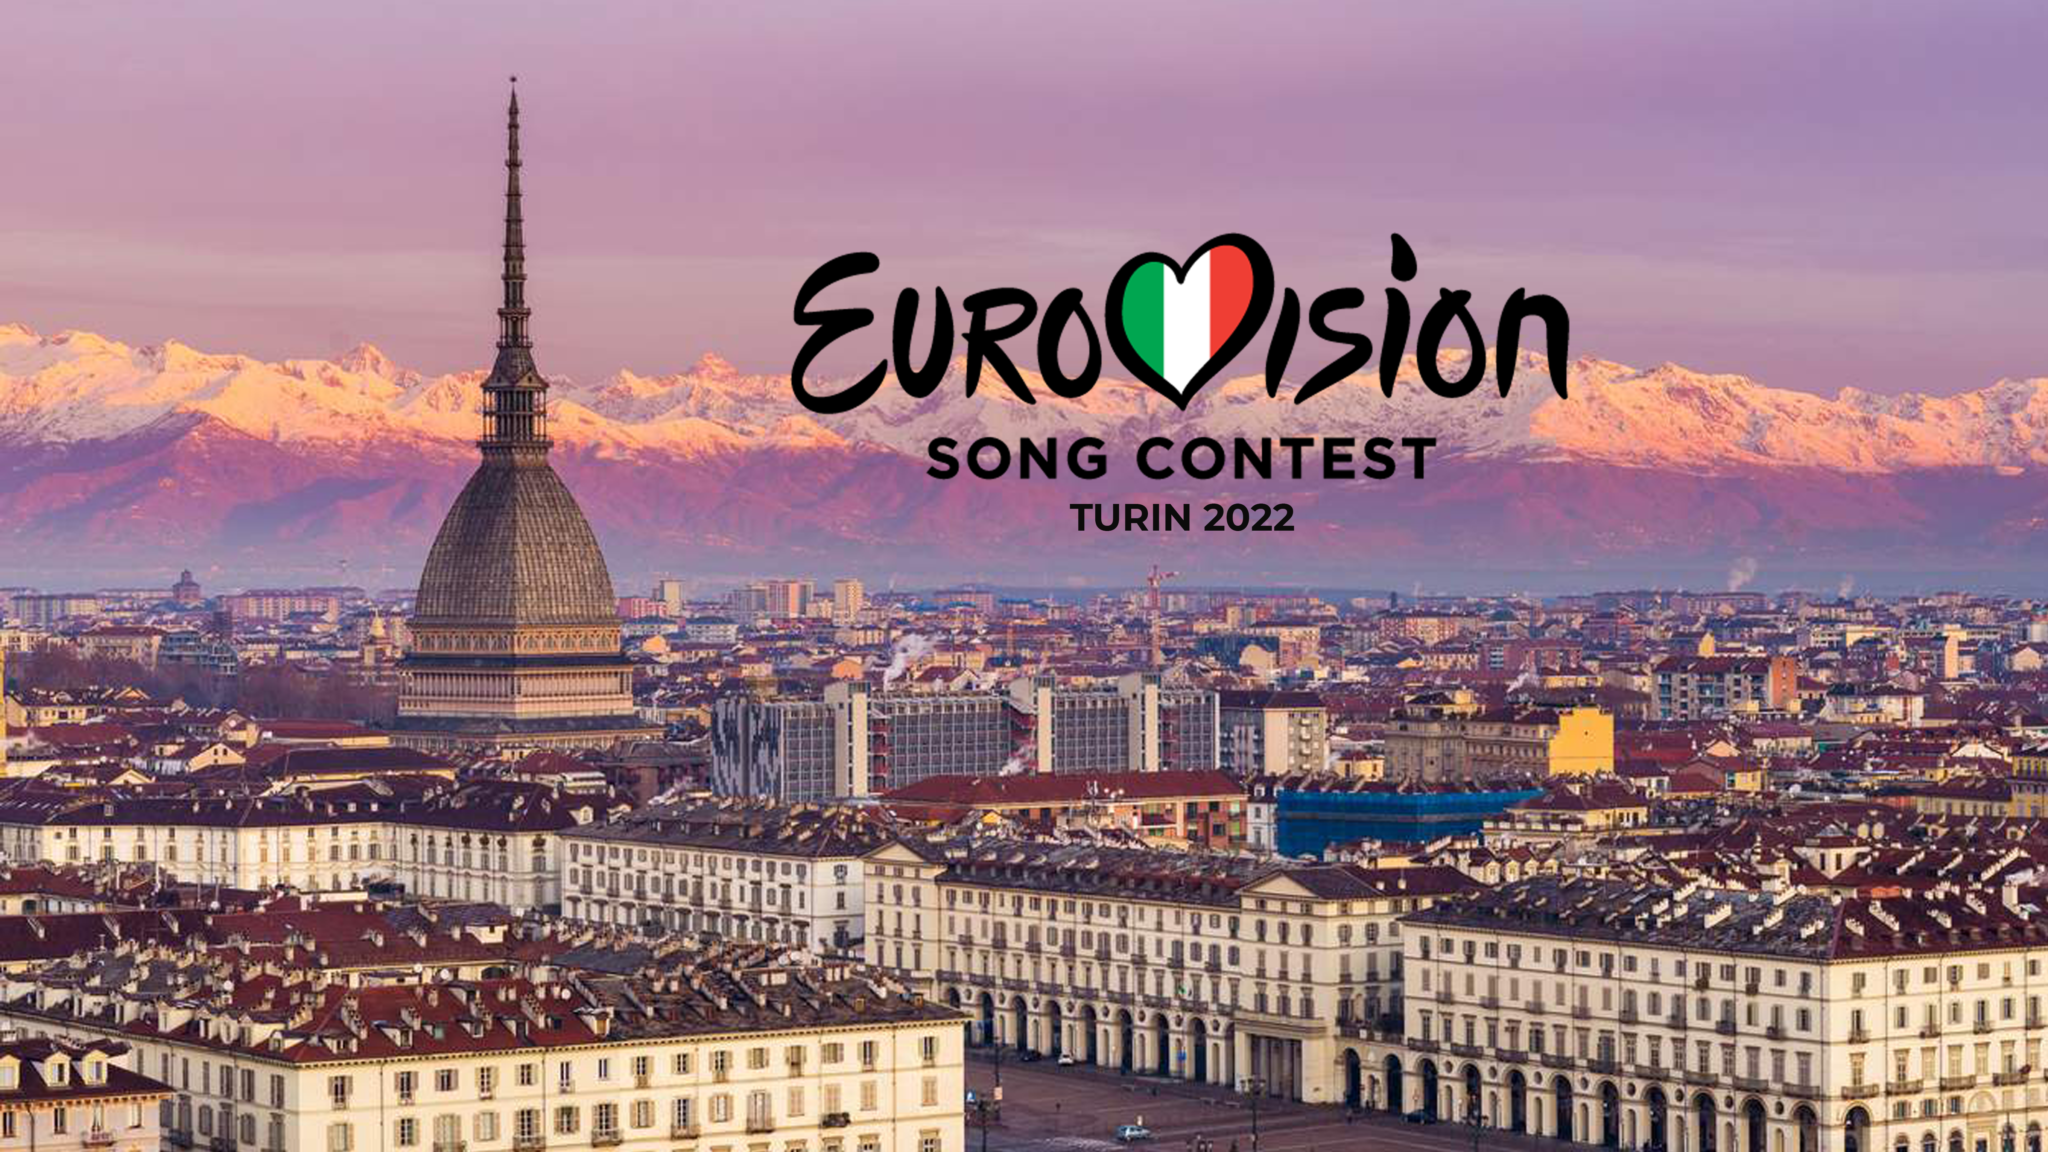 Turín se postula como candidata a albergar el festival de Eurovisión 2022